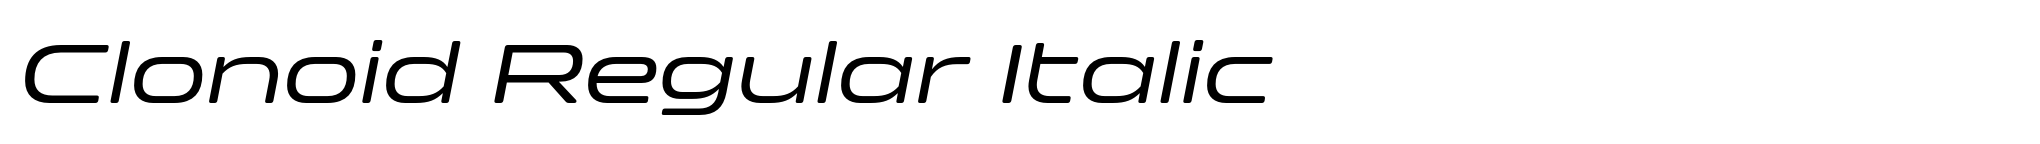 Clonoid Regular Italic image